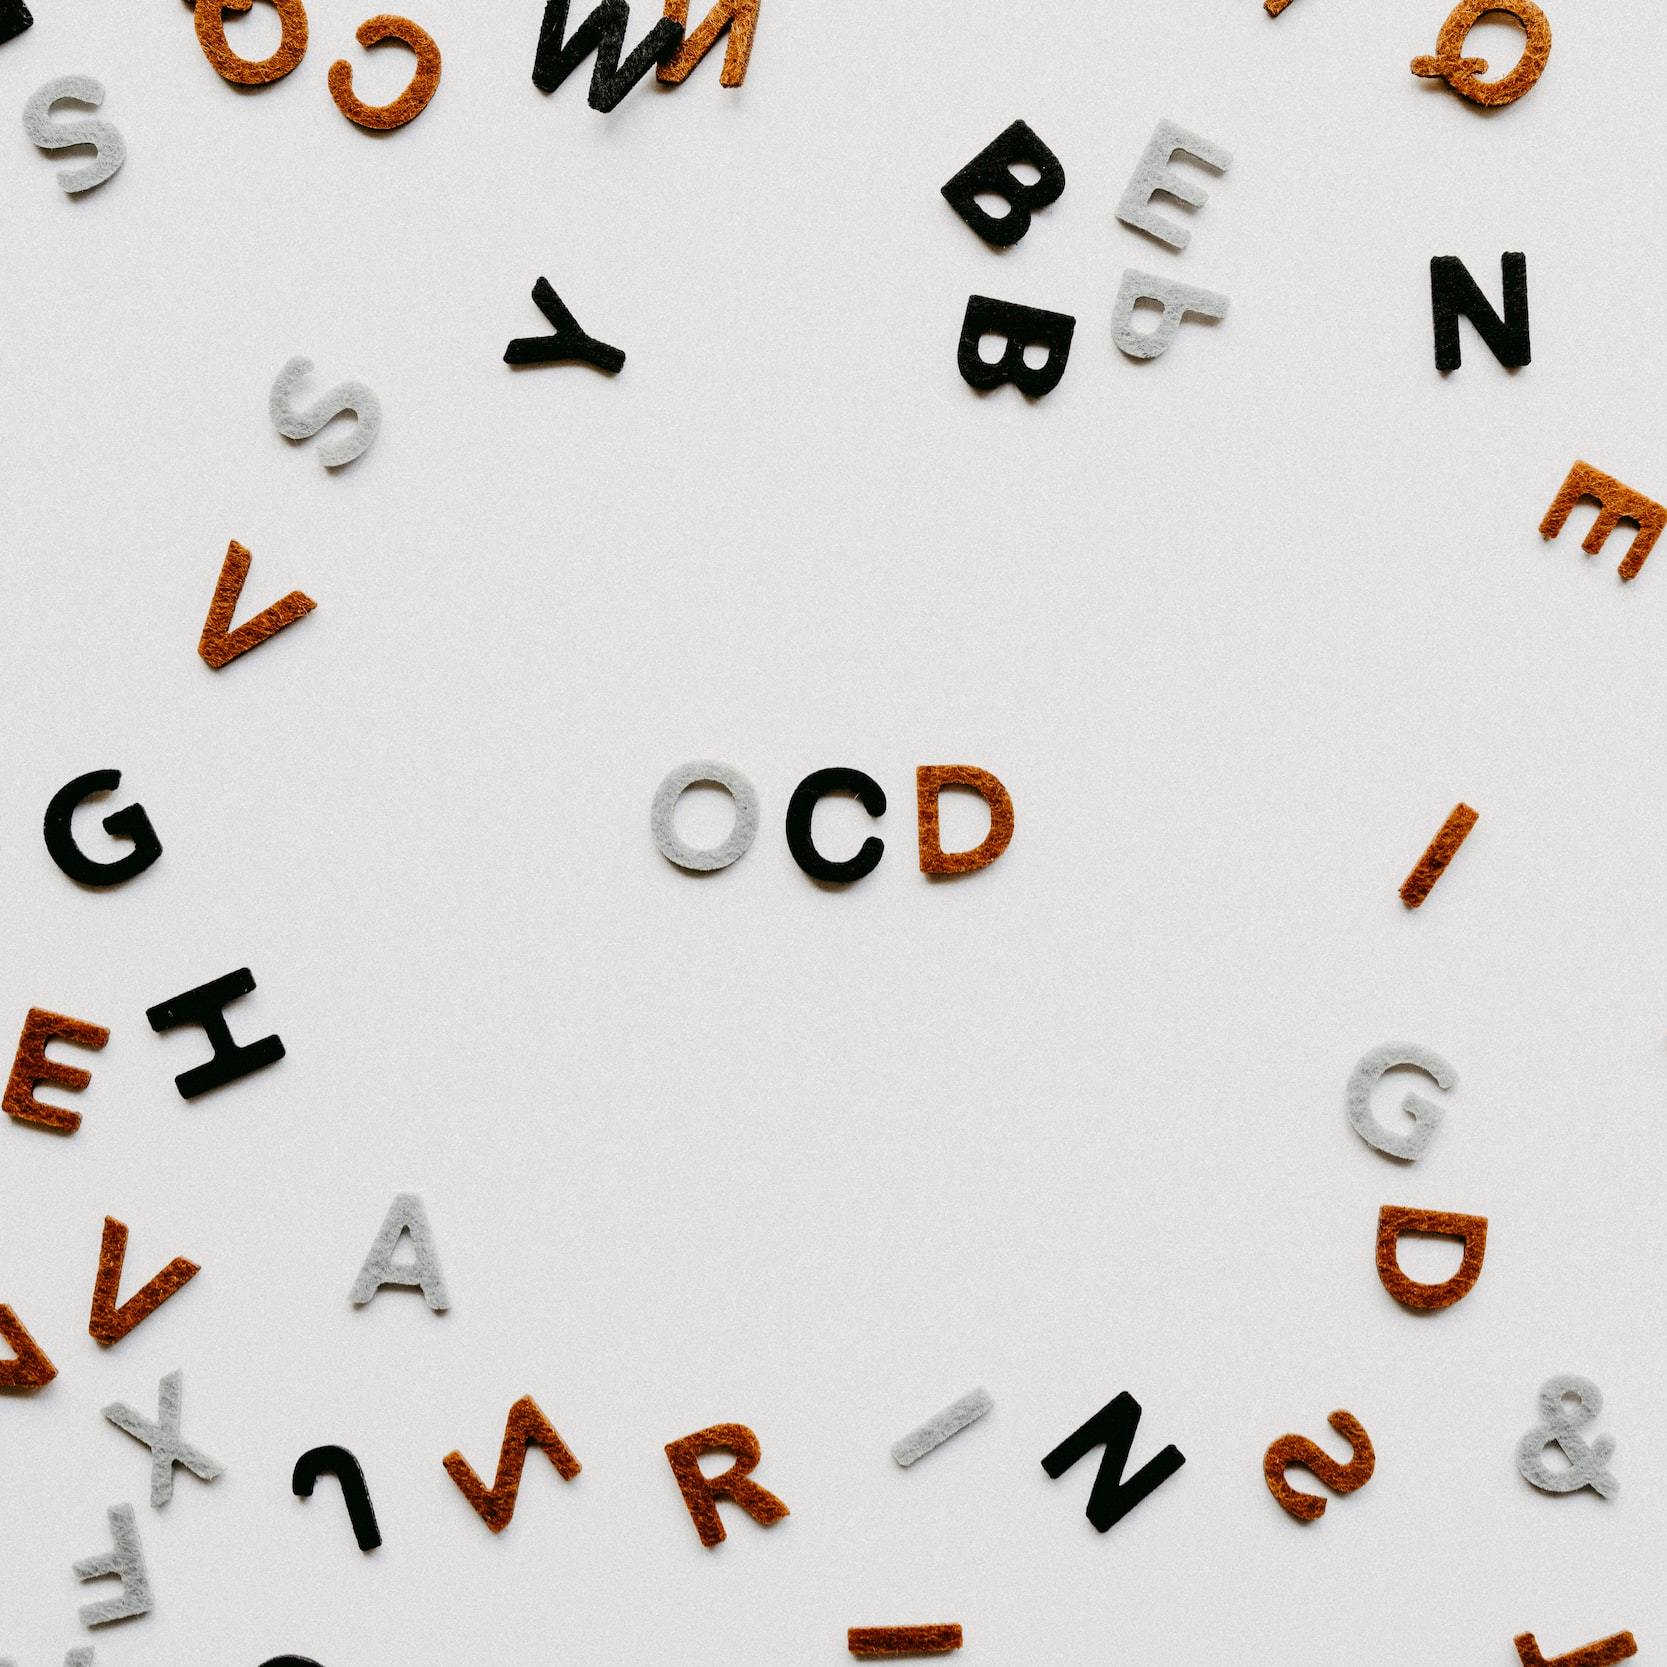 Scritta "OCD" che compare al centro di molte altre lettere sparse.